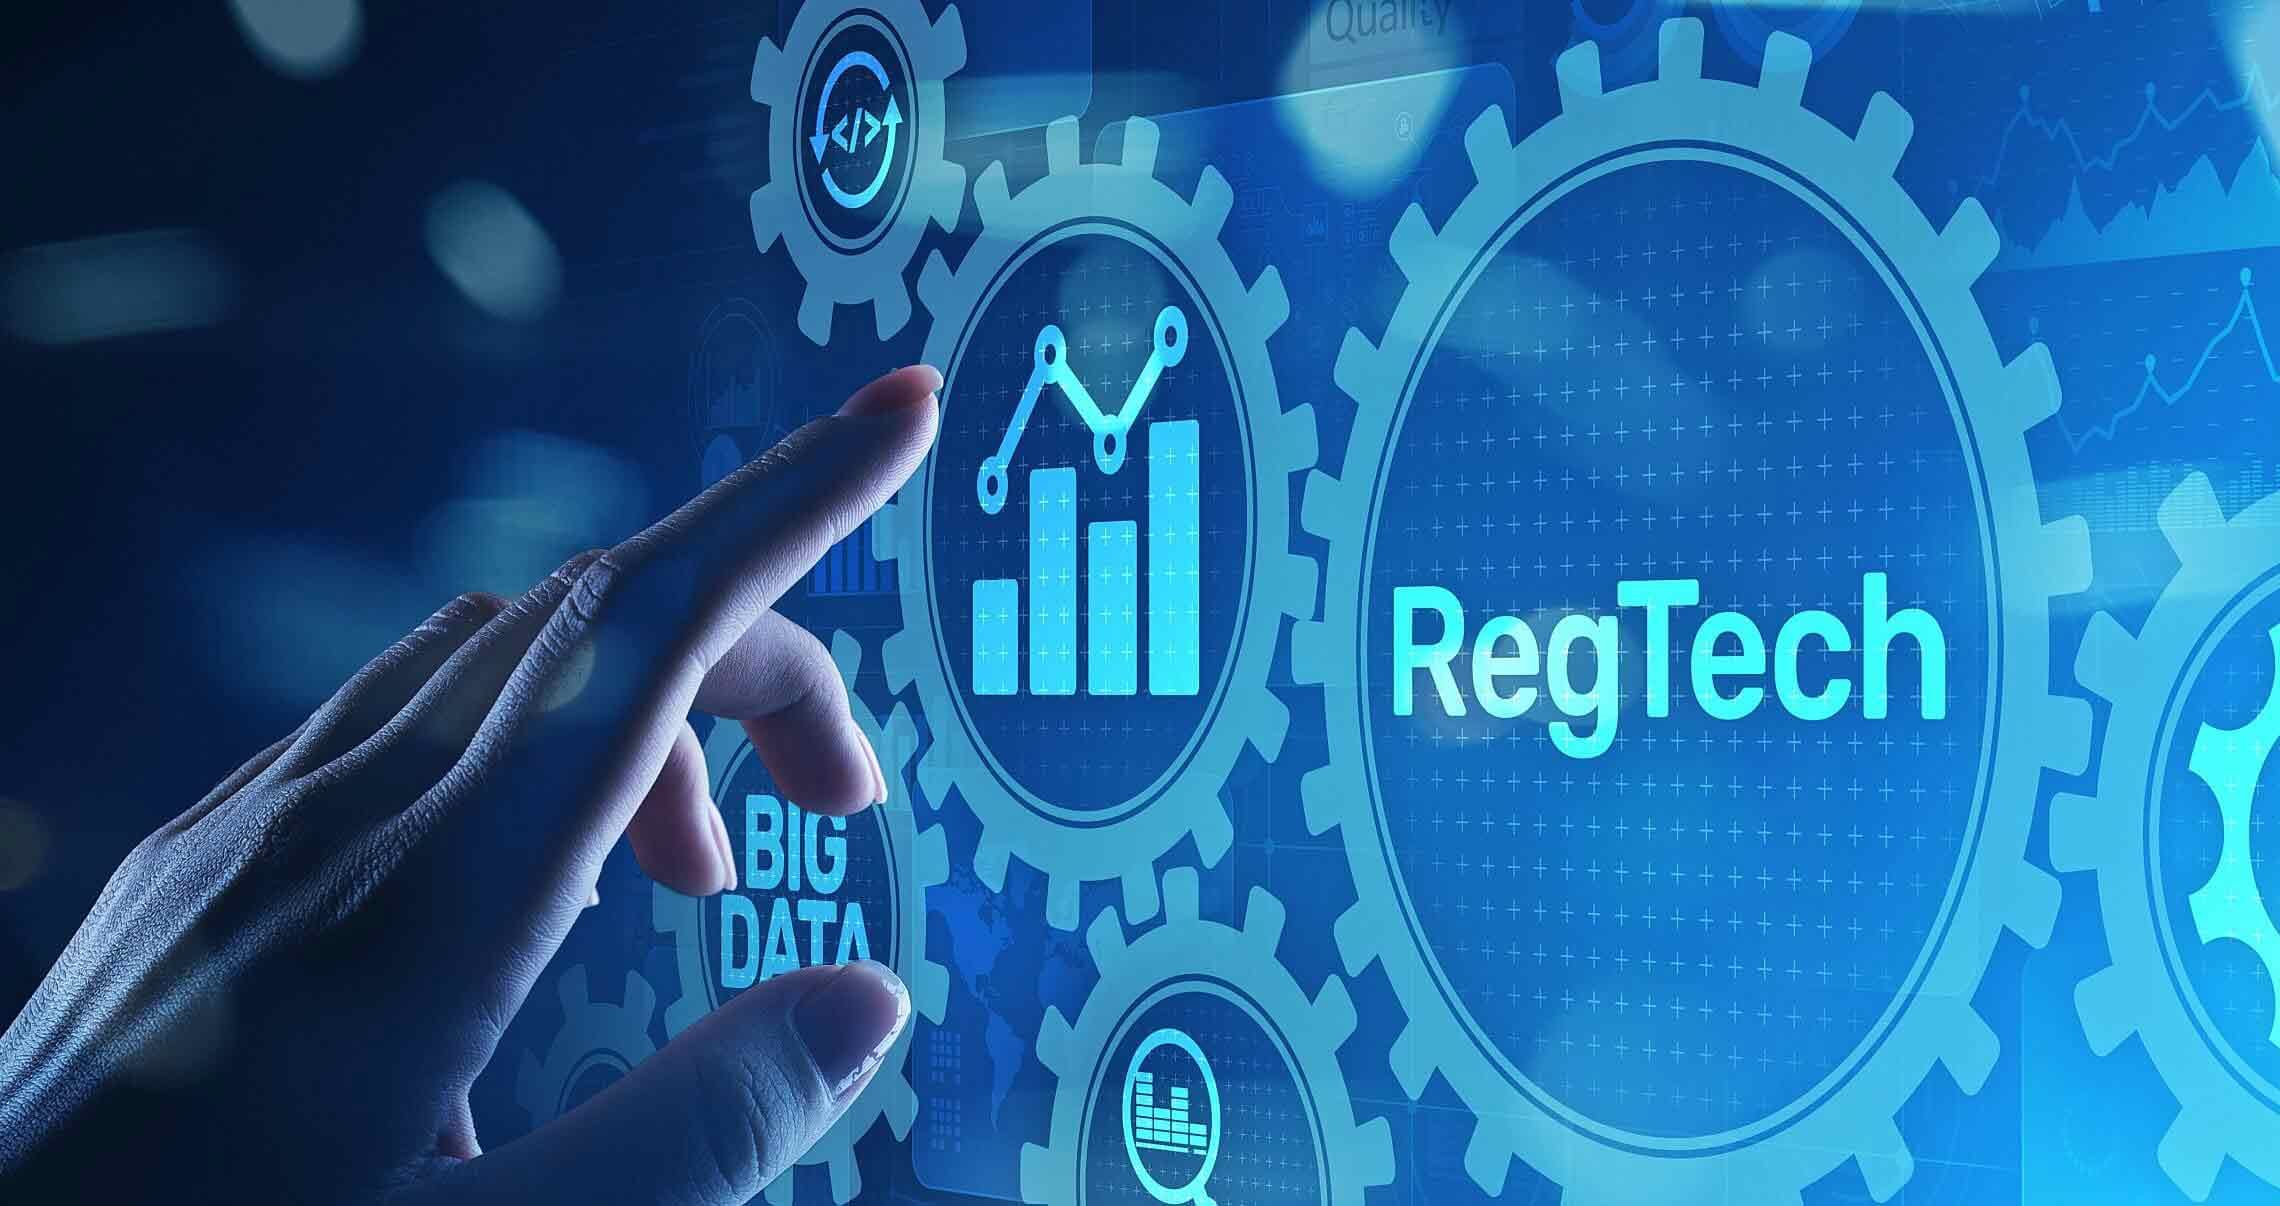 RegTech (Regulatory Technology) Investments